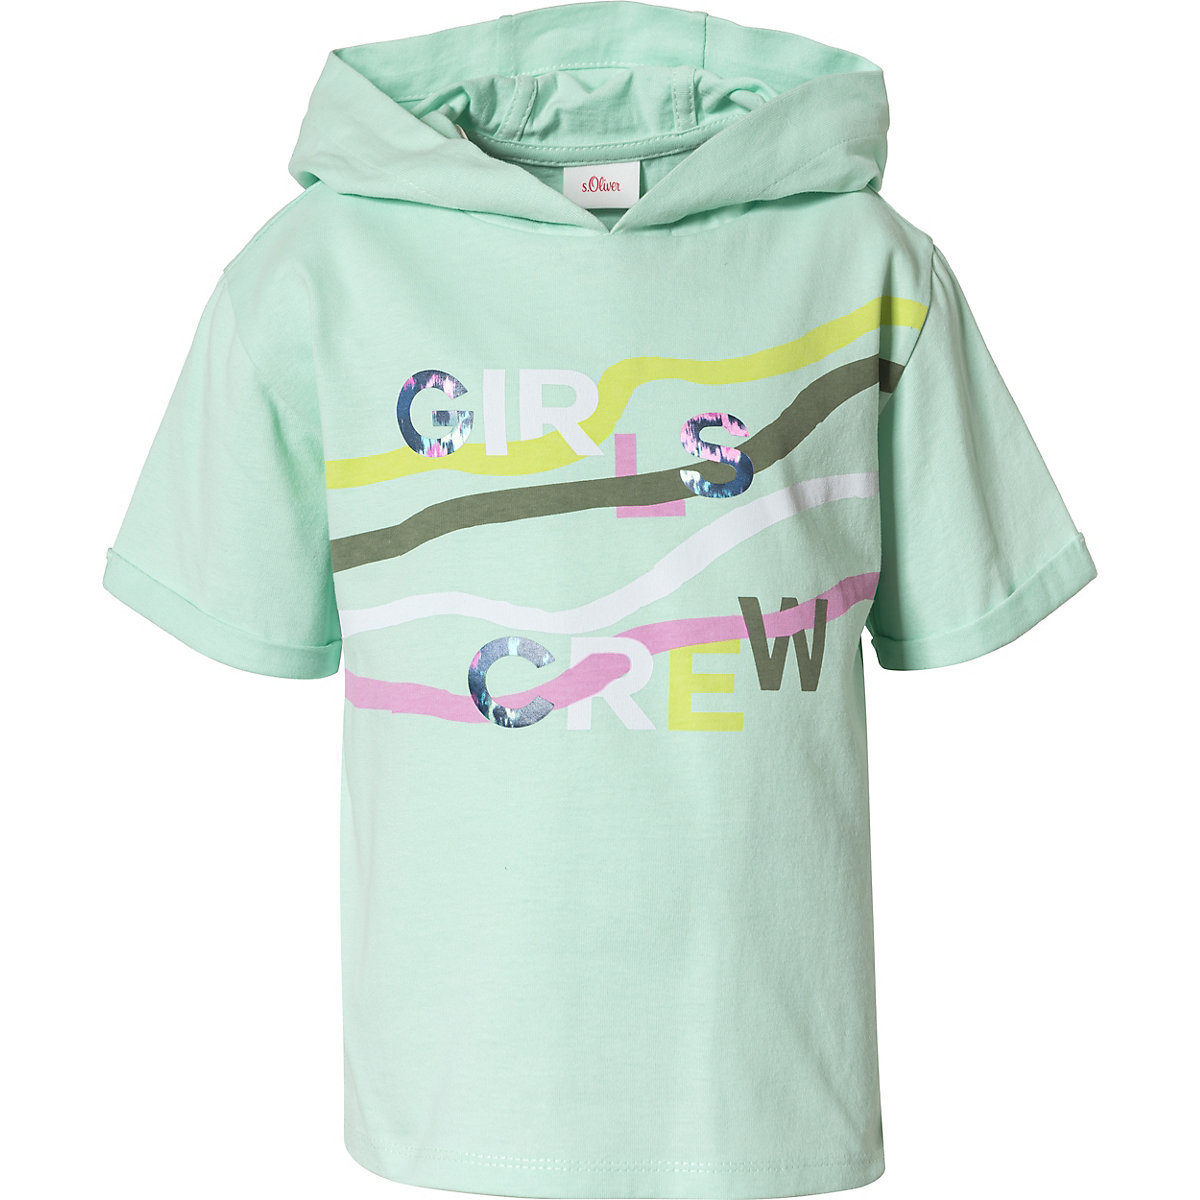 s.Oliver T-Shirt für Mädchen aqua